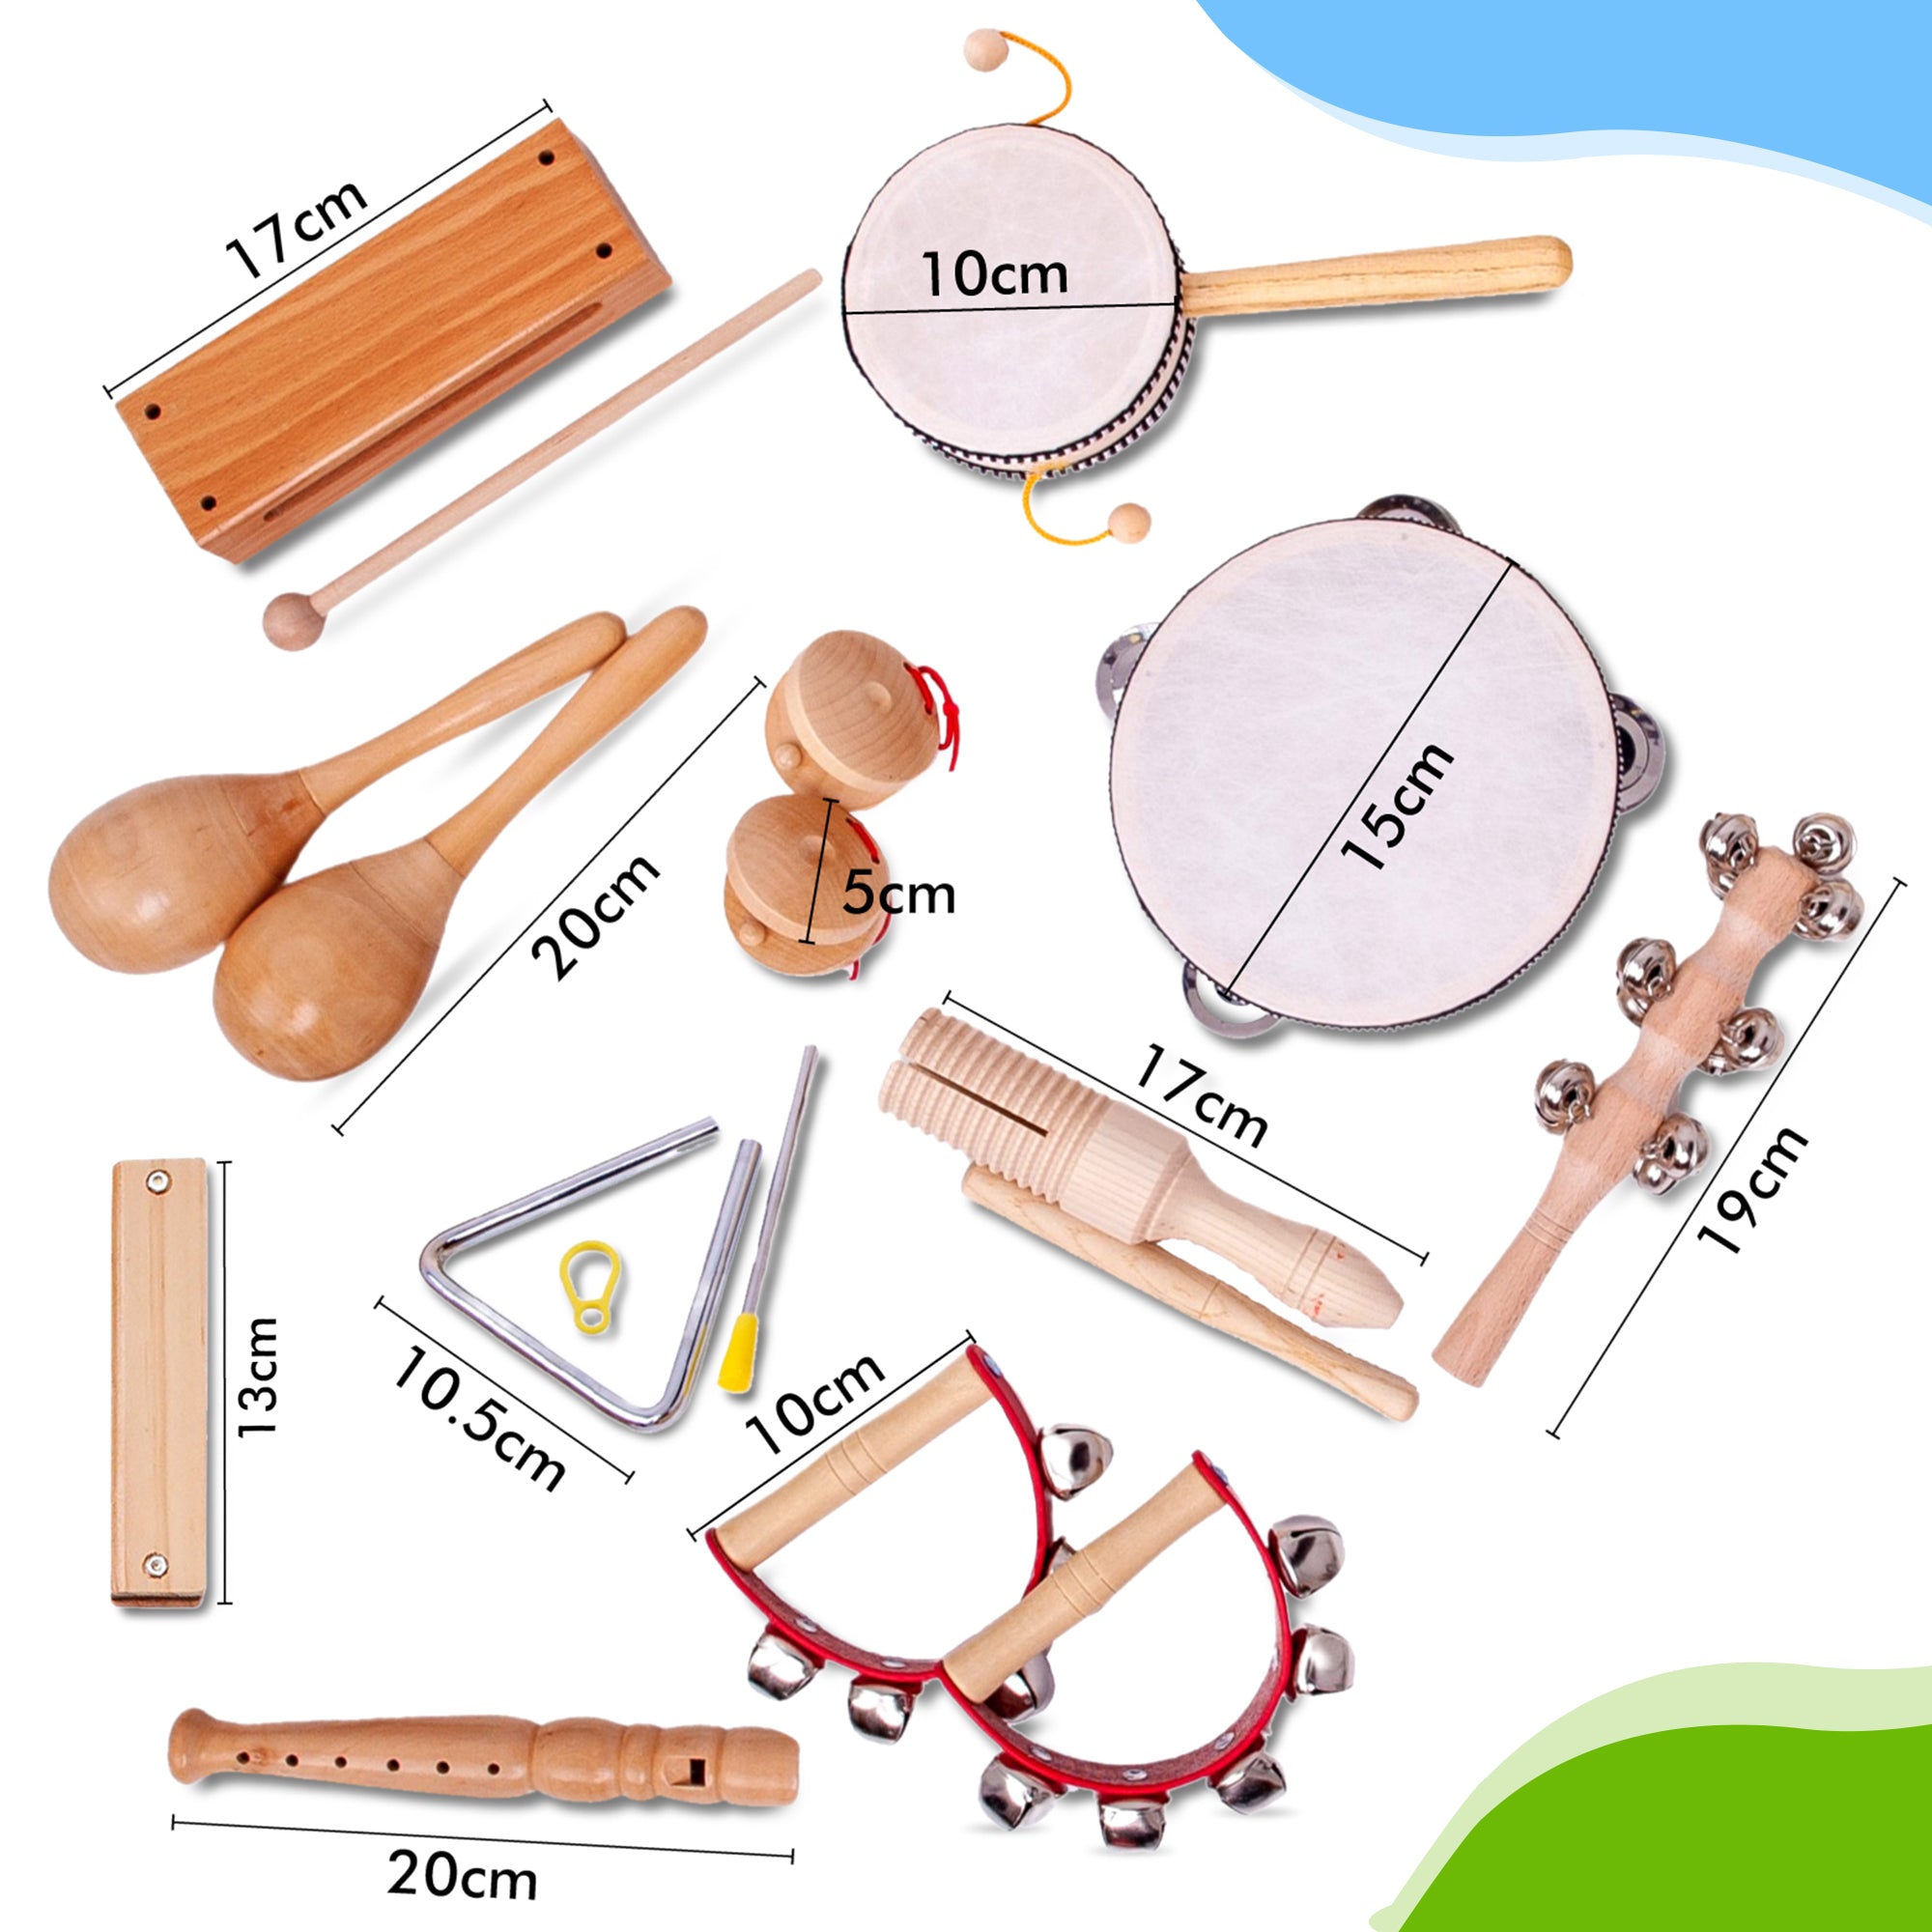 Queste sono le dimensioni degli strumenti giocattolo in legno, realizzati appositamente per i bambini. Ordinali subito e domani suona questo flauto dolce o armonica in legno. Puoi scegliere il tuo strumento giocattolo